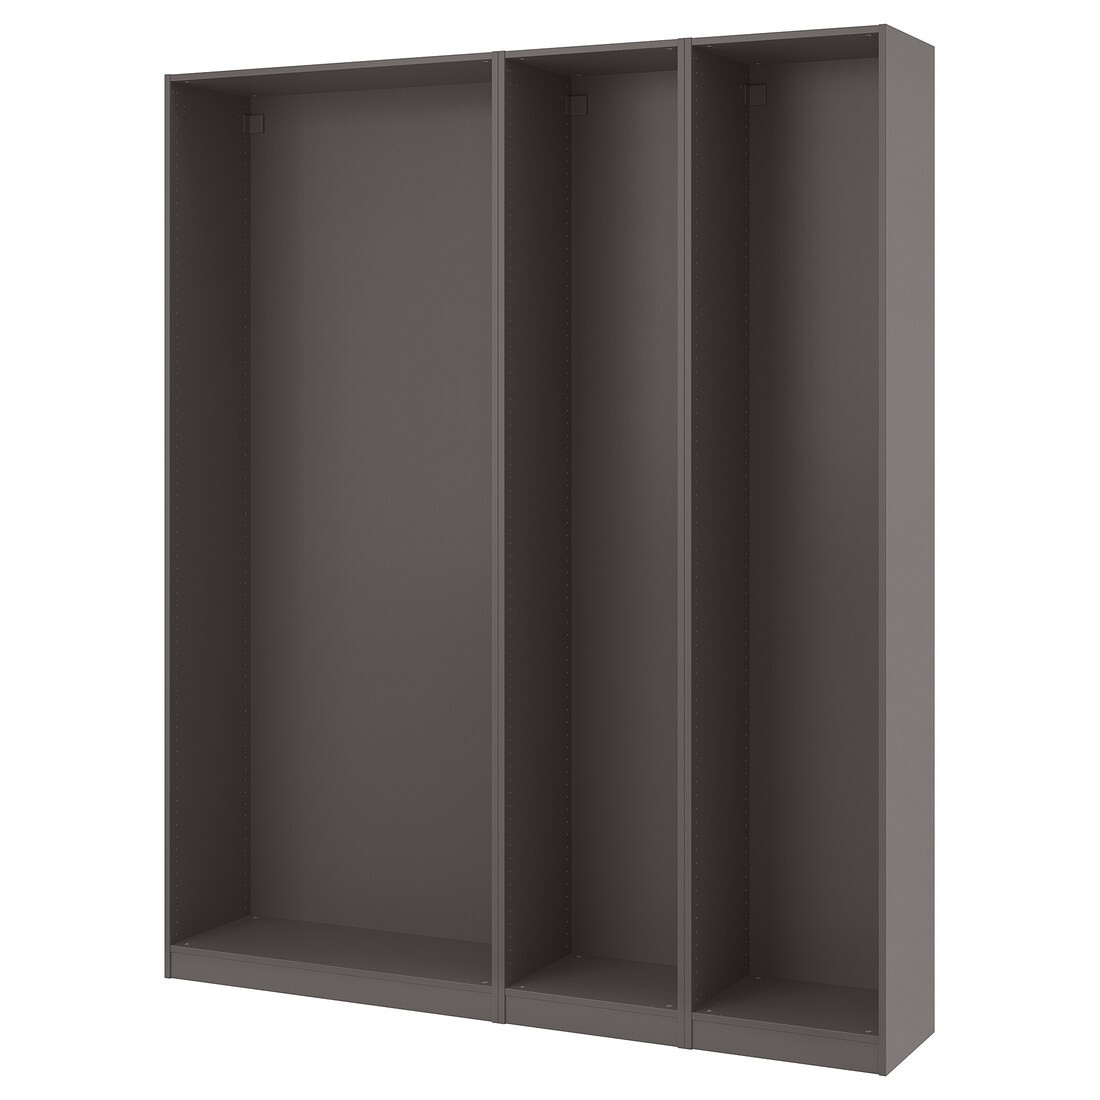 IKEA PAX ПАКС 3 каркаса гардероба, темно-серый, 200x35x236 см 39432183 394.321.83